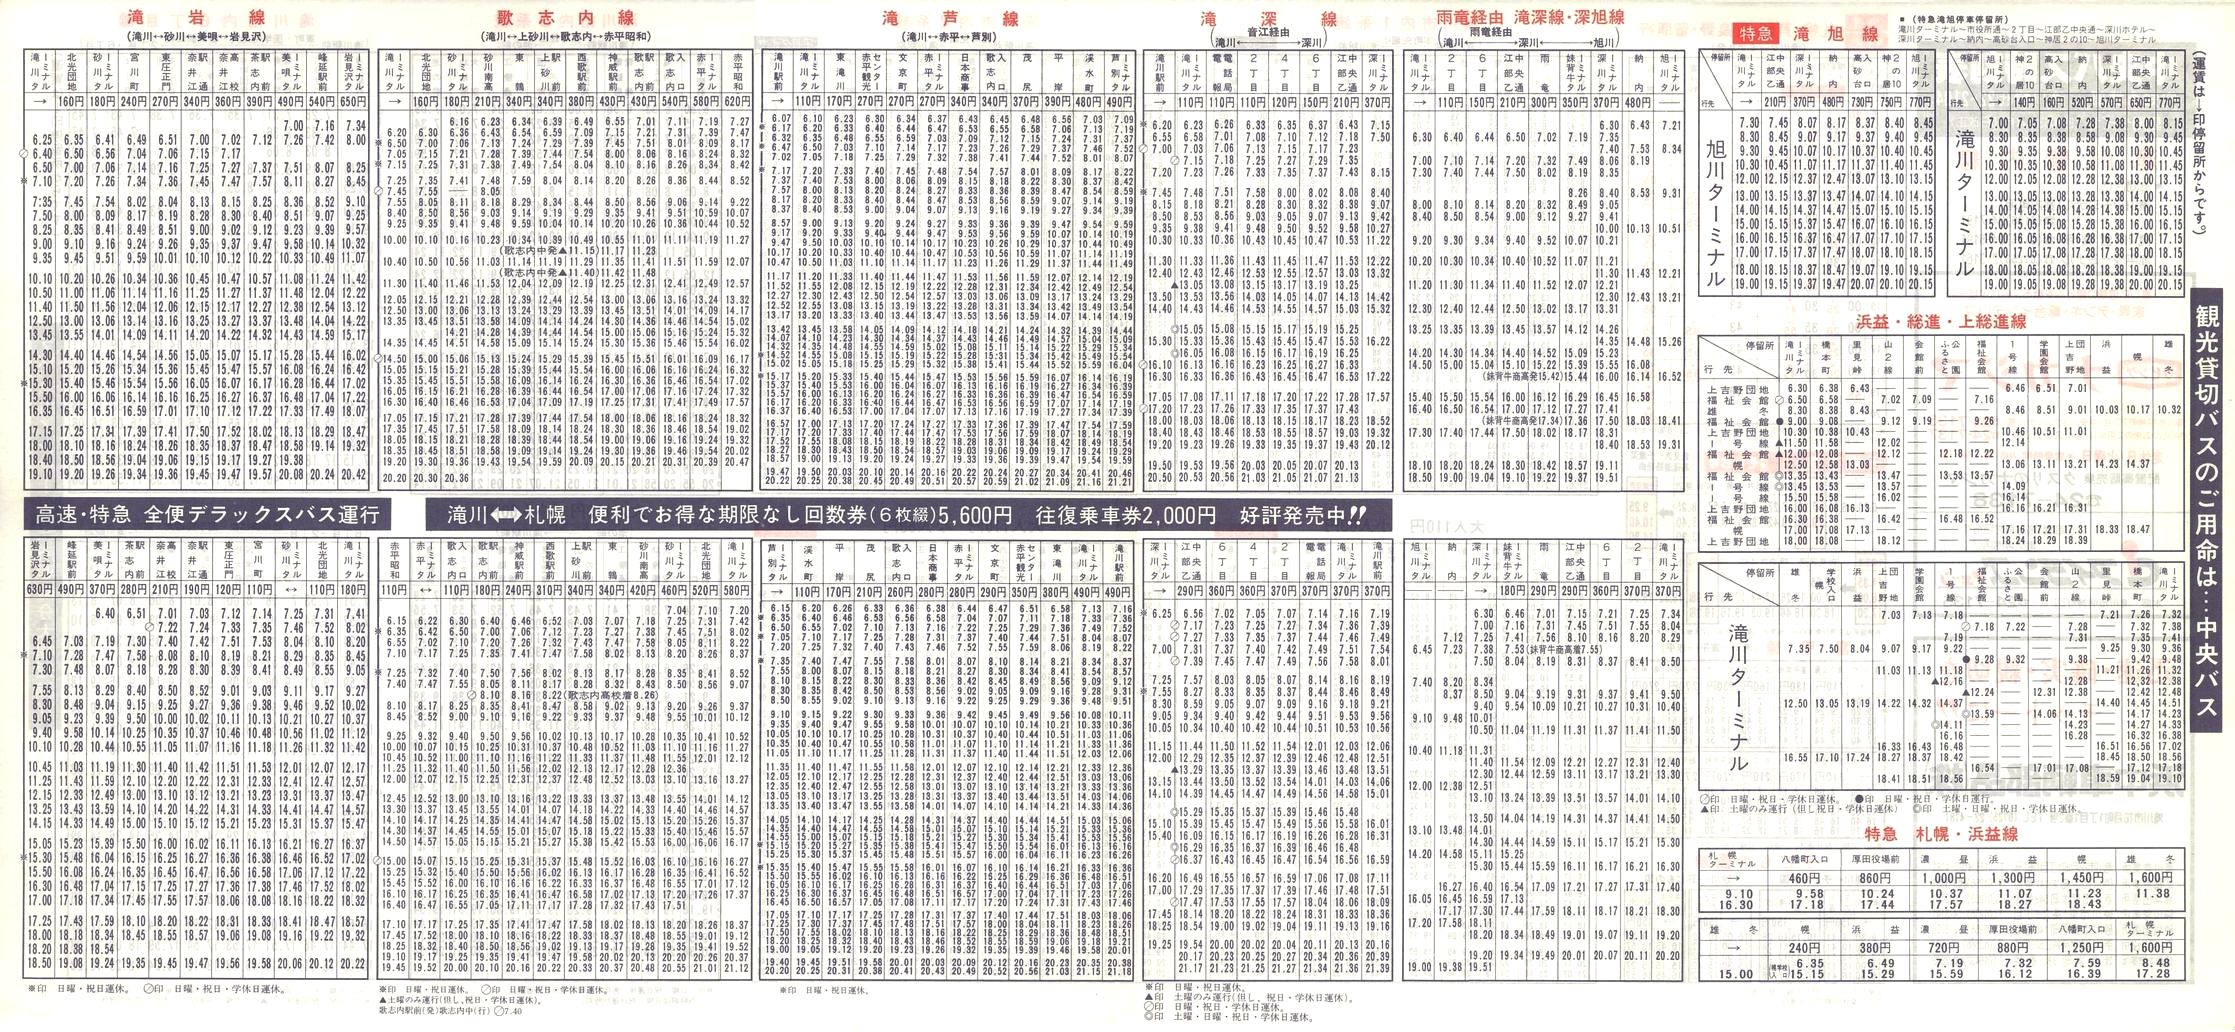 1988-04-10改正_北海道中央バス(空知)_滝川管内線時刻表裏面